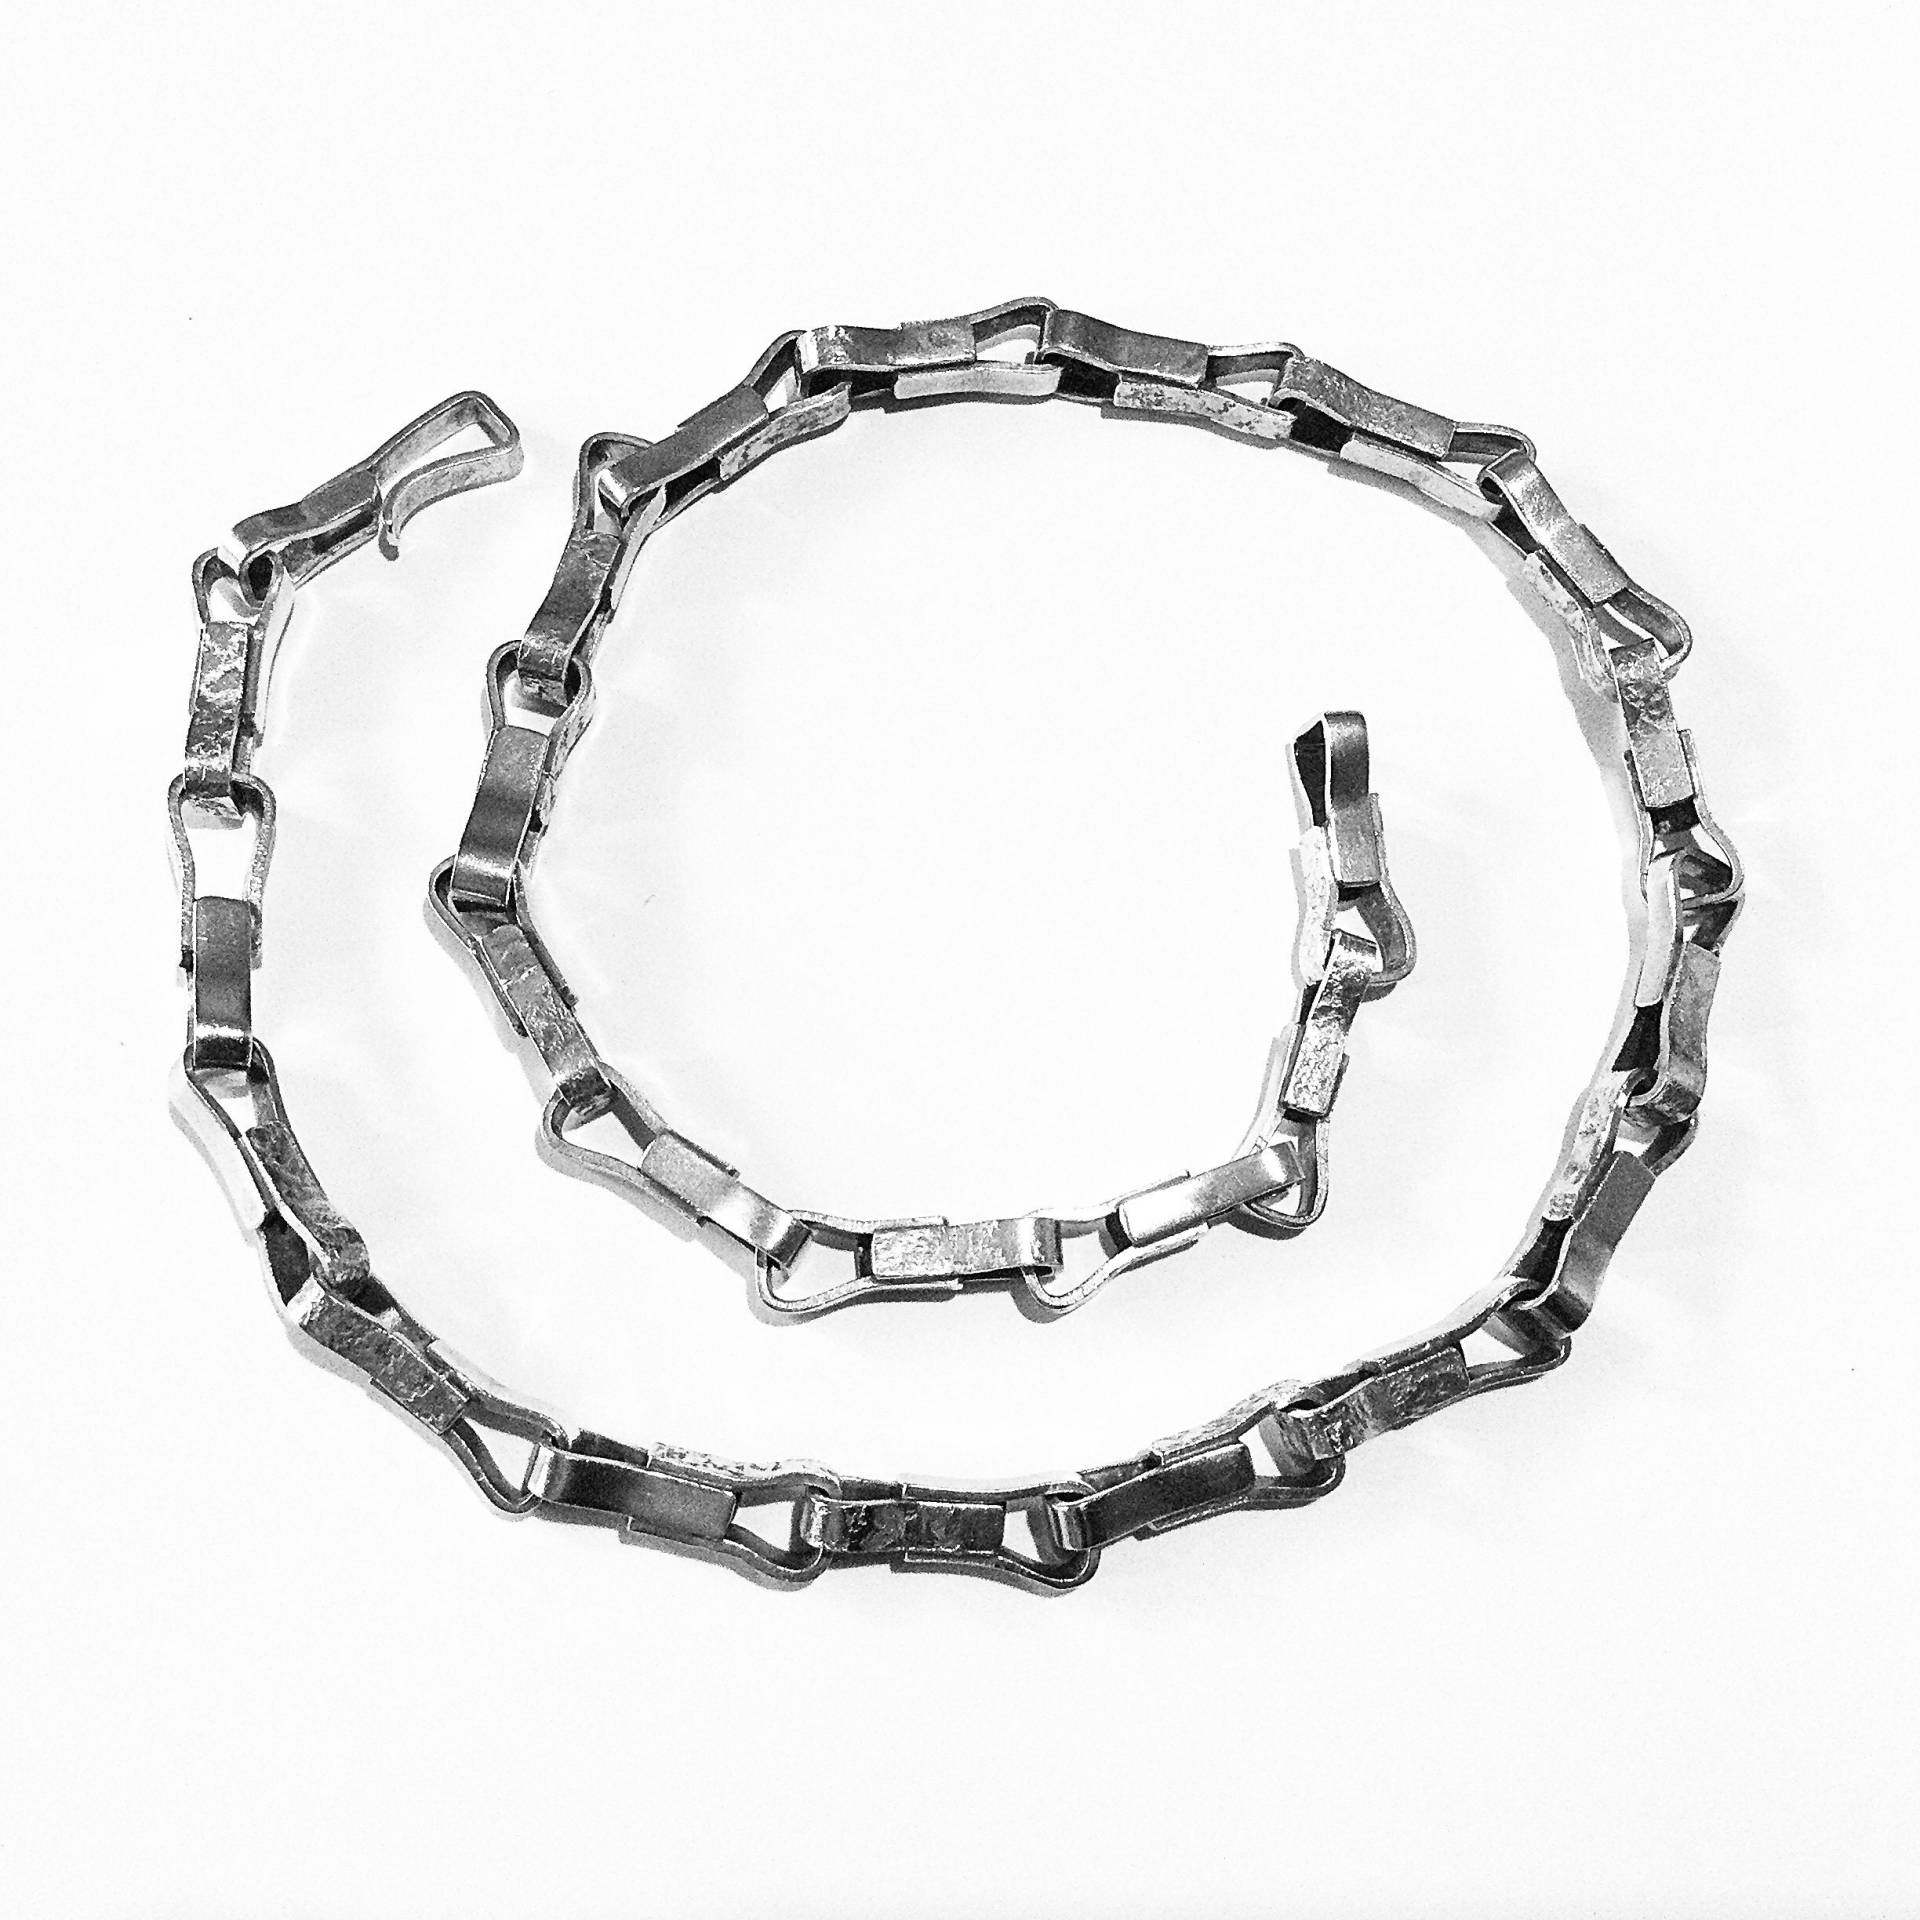 Vintage Sehr Seltene Halskette Entworfen Und Handgefertigt Von Claes Gierta Schwere Silberkette Mit Hakenverschluss 1967 Schweden von nordsilver